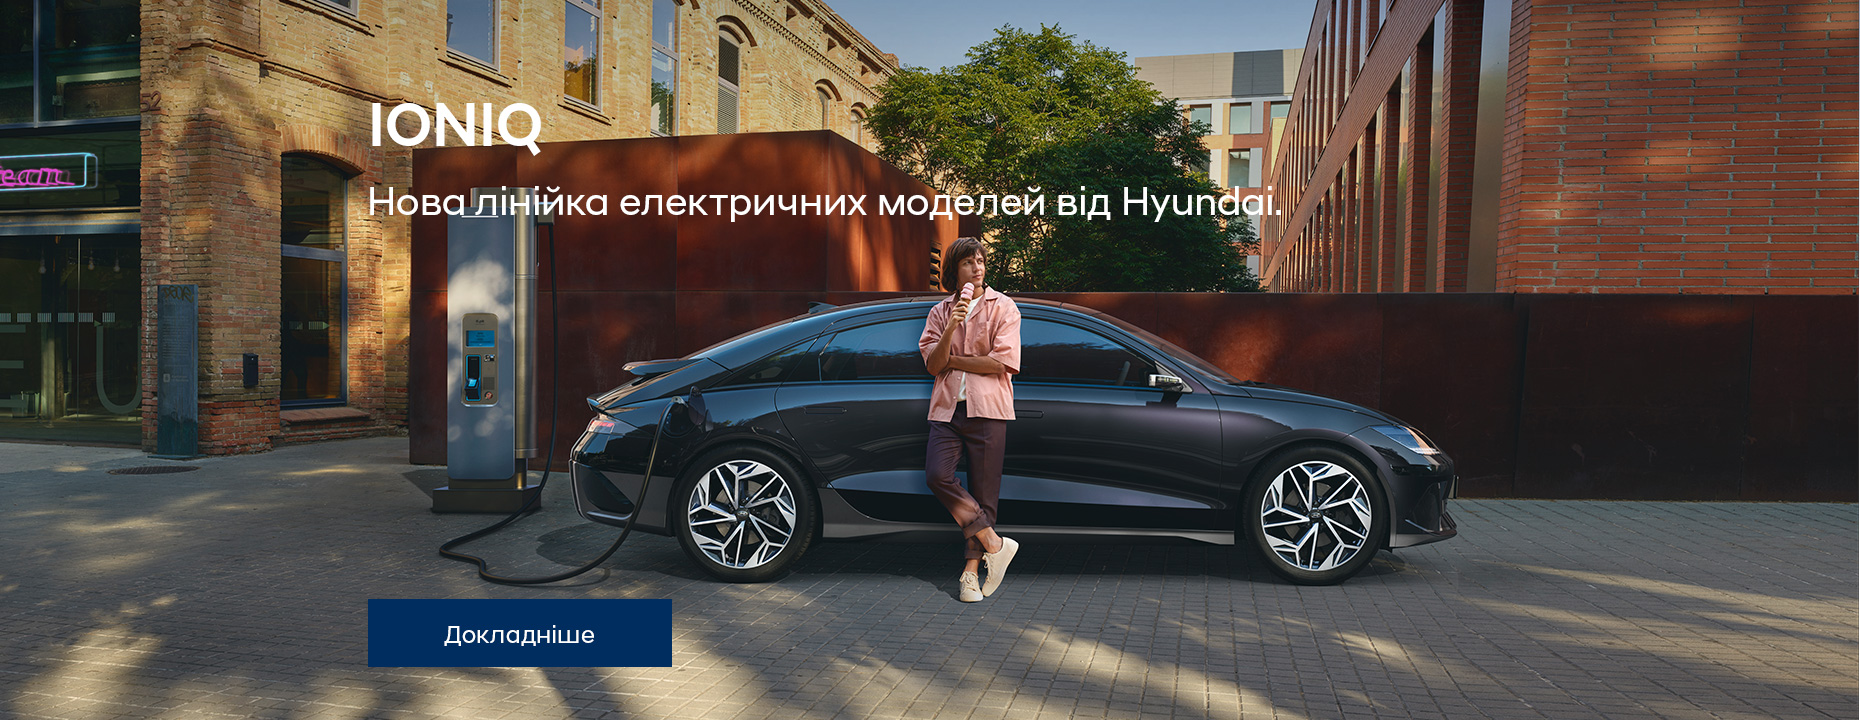 Автомобілі Hyundai м. Одеса | Купити новий Хюндай | Автотрейдінг Одеса ДП - фото 34